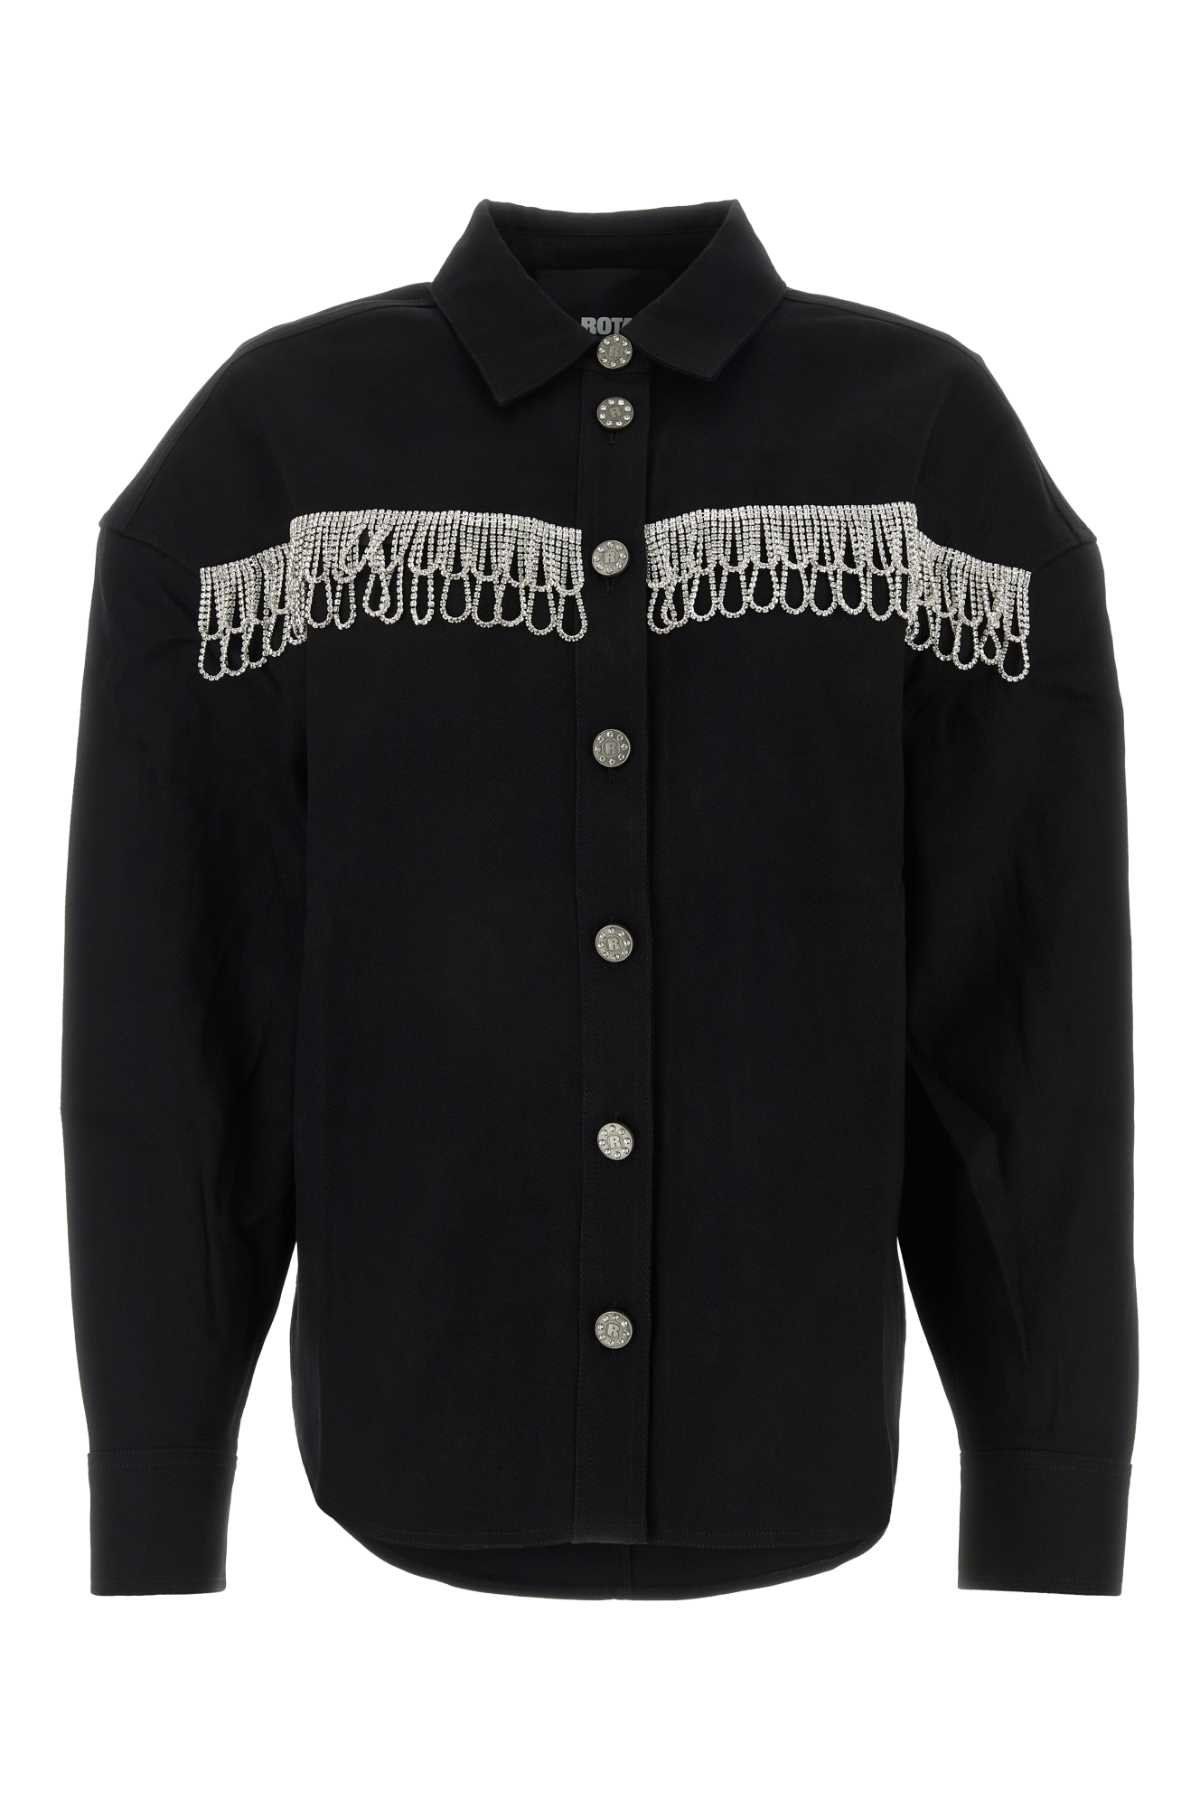 Shop Rotate Birger Christensen Black Cotton Oversize Shirt